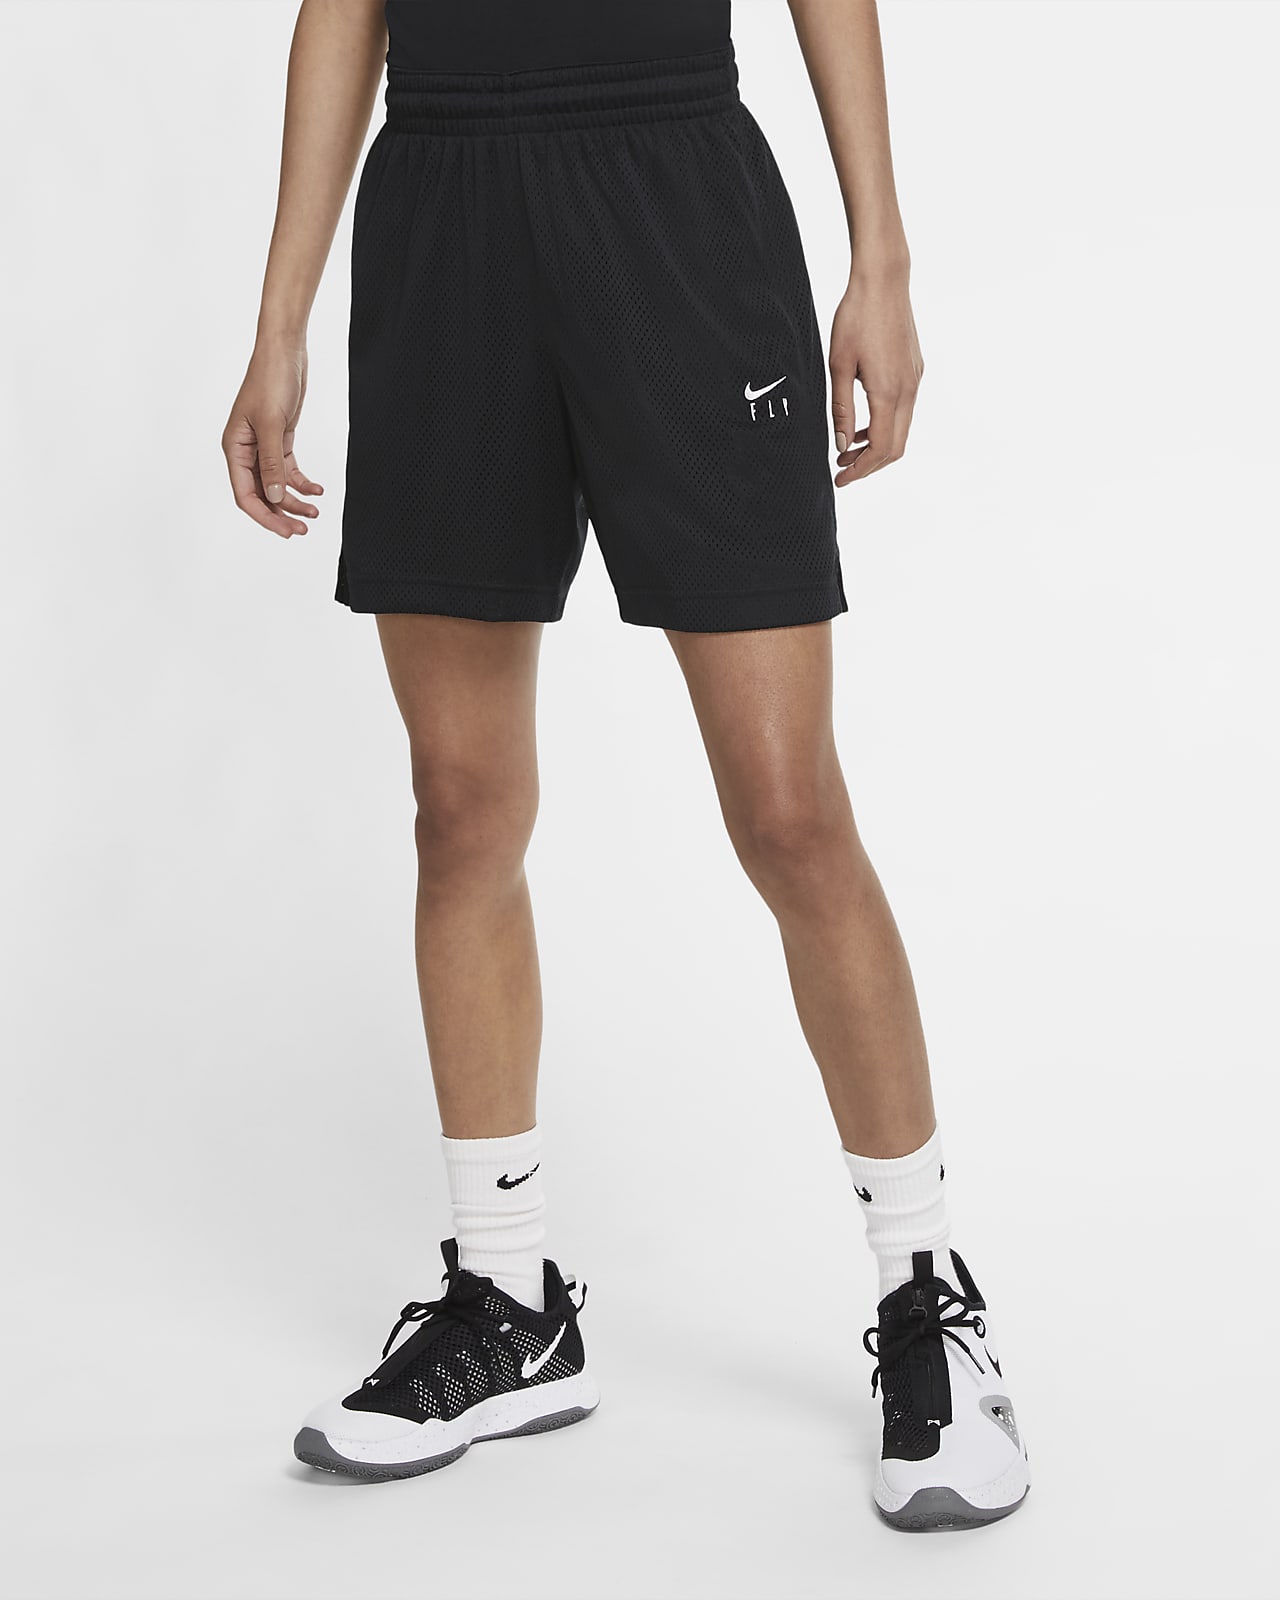 Calções de basquetebol Nike Swoosh Fly para mulher